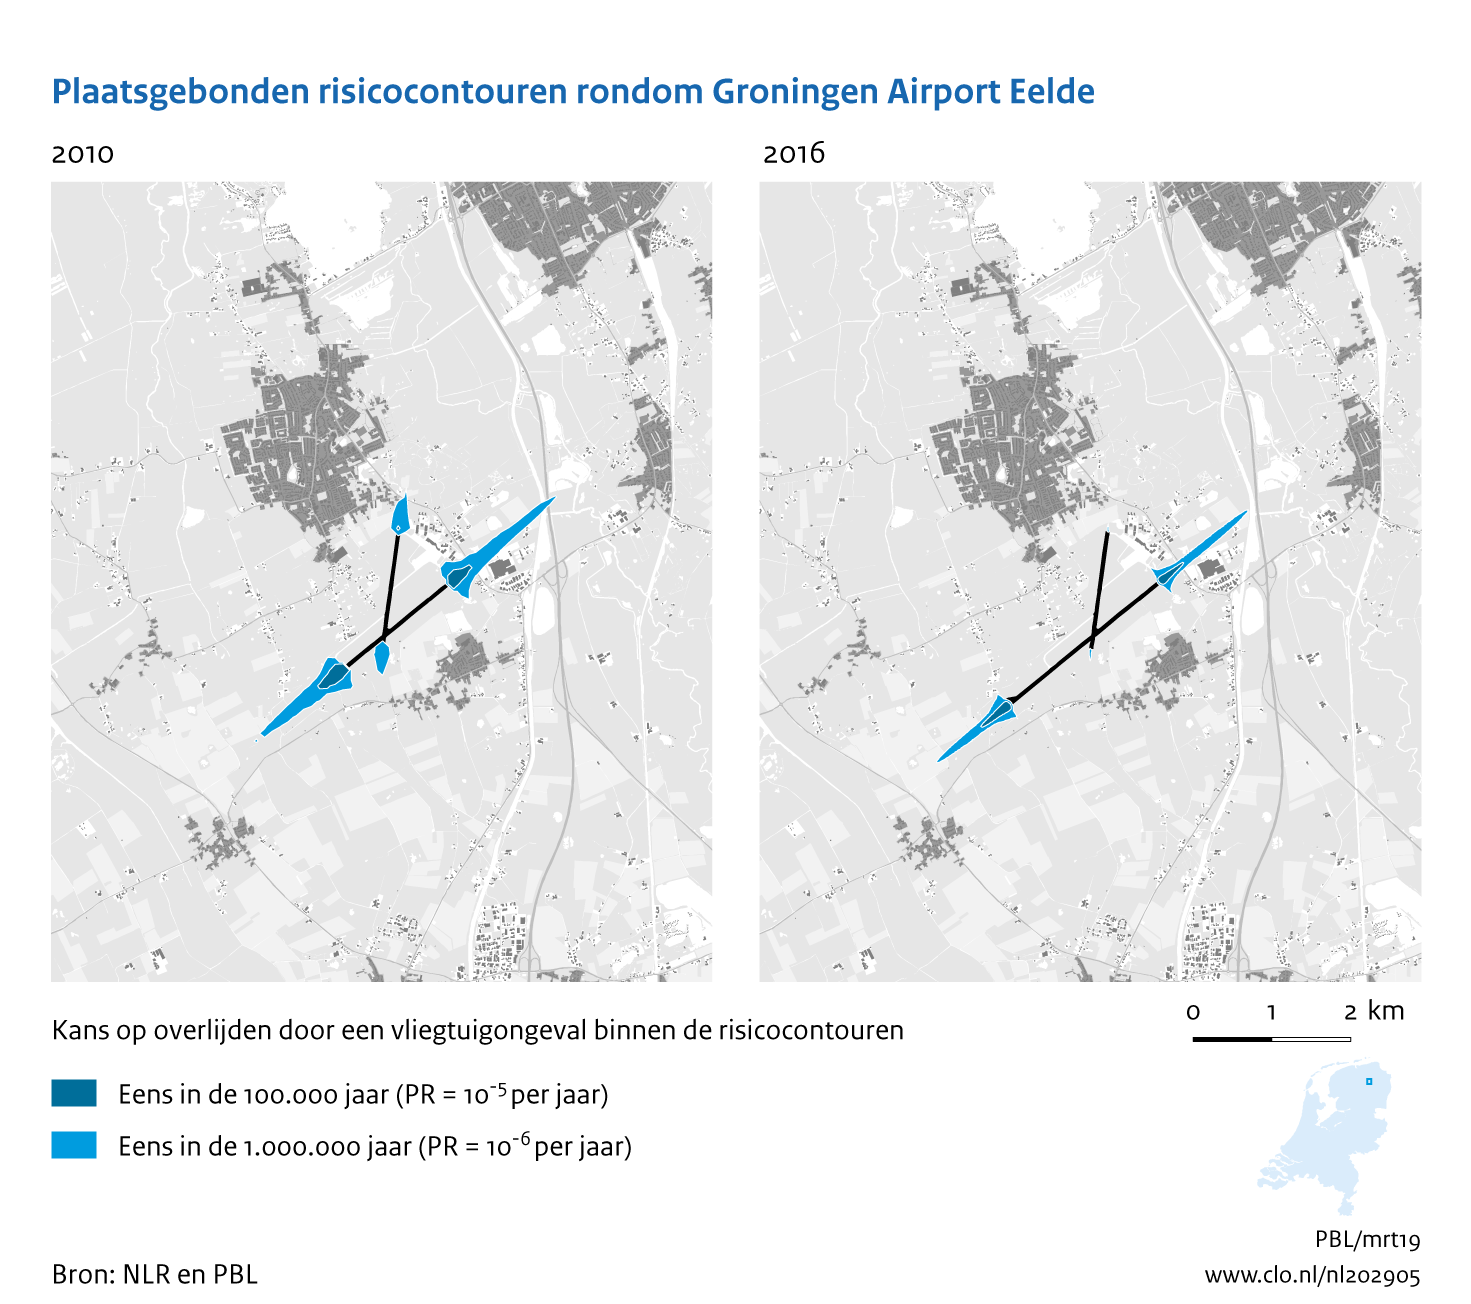 Figuur Plaatsgebonden risicocontouren rondom Groningen Airport Eelde, 2010-2016. In de rest van de tekst wordt deze figuur uitgebreider uitgelegd.